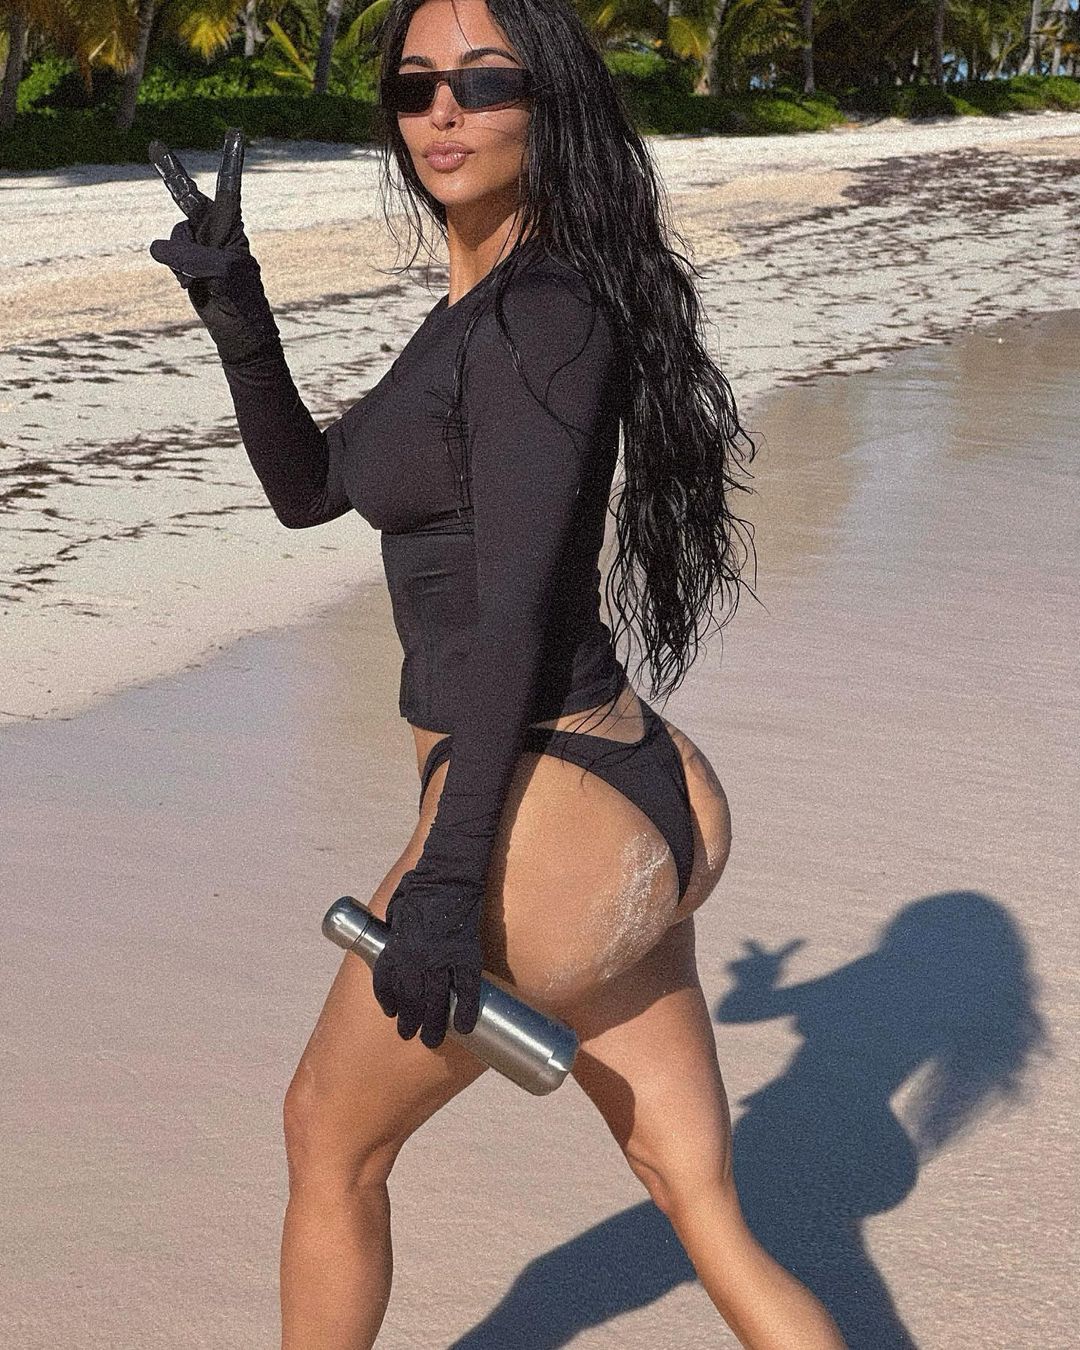 Fotos n°16 : Kim Kardashian es una Sun Bum!